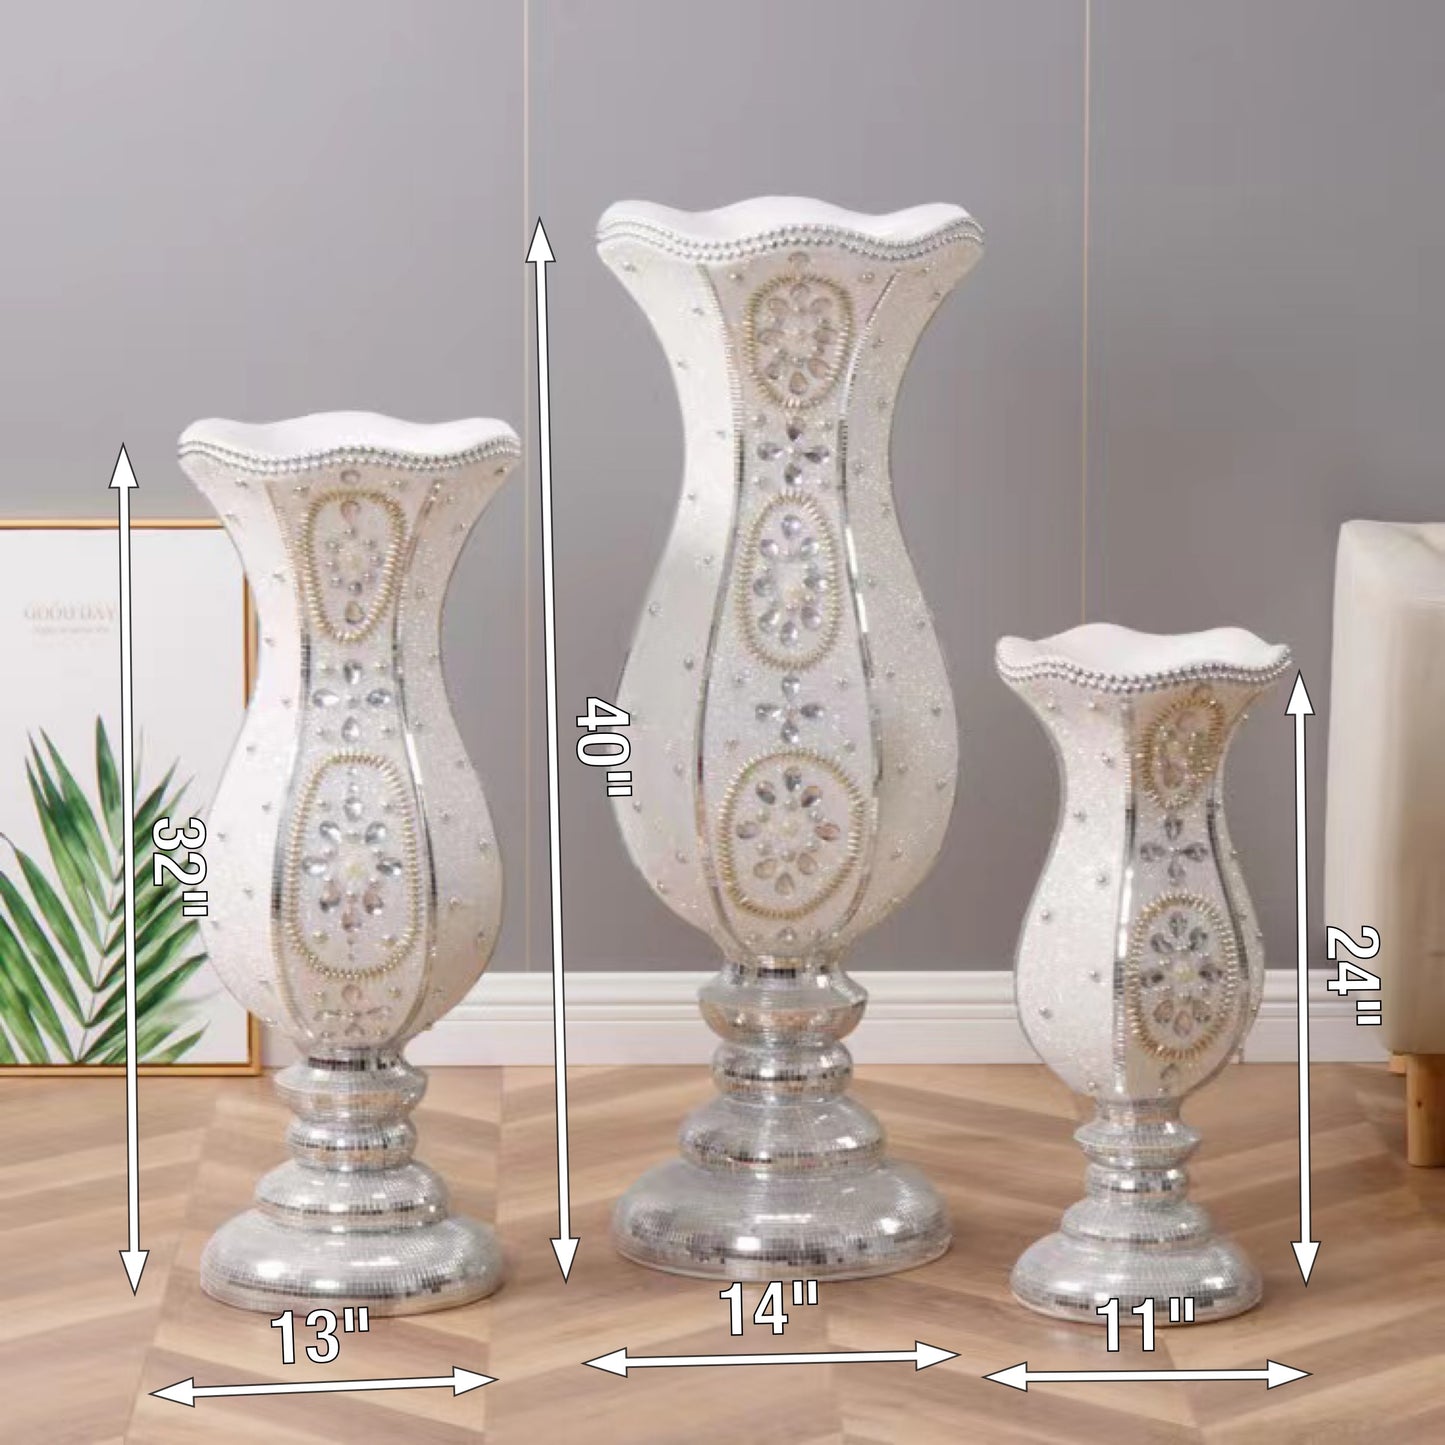 G-FVD 3-1 Flower Vase Decor